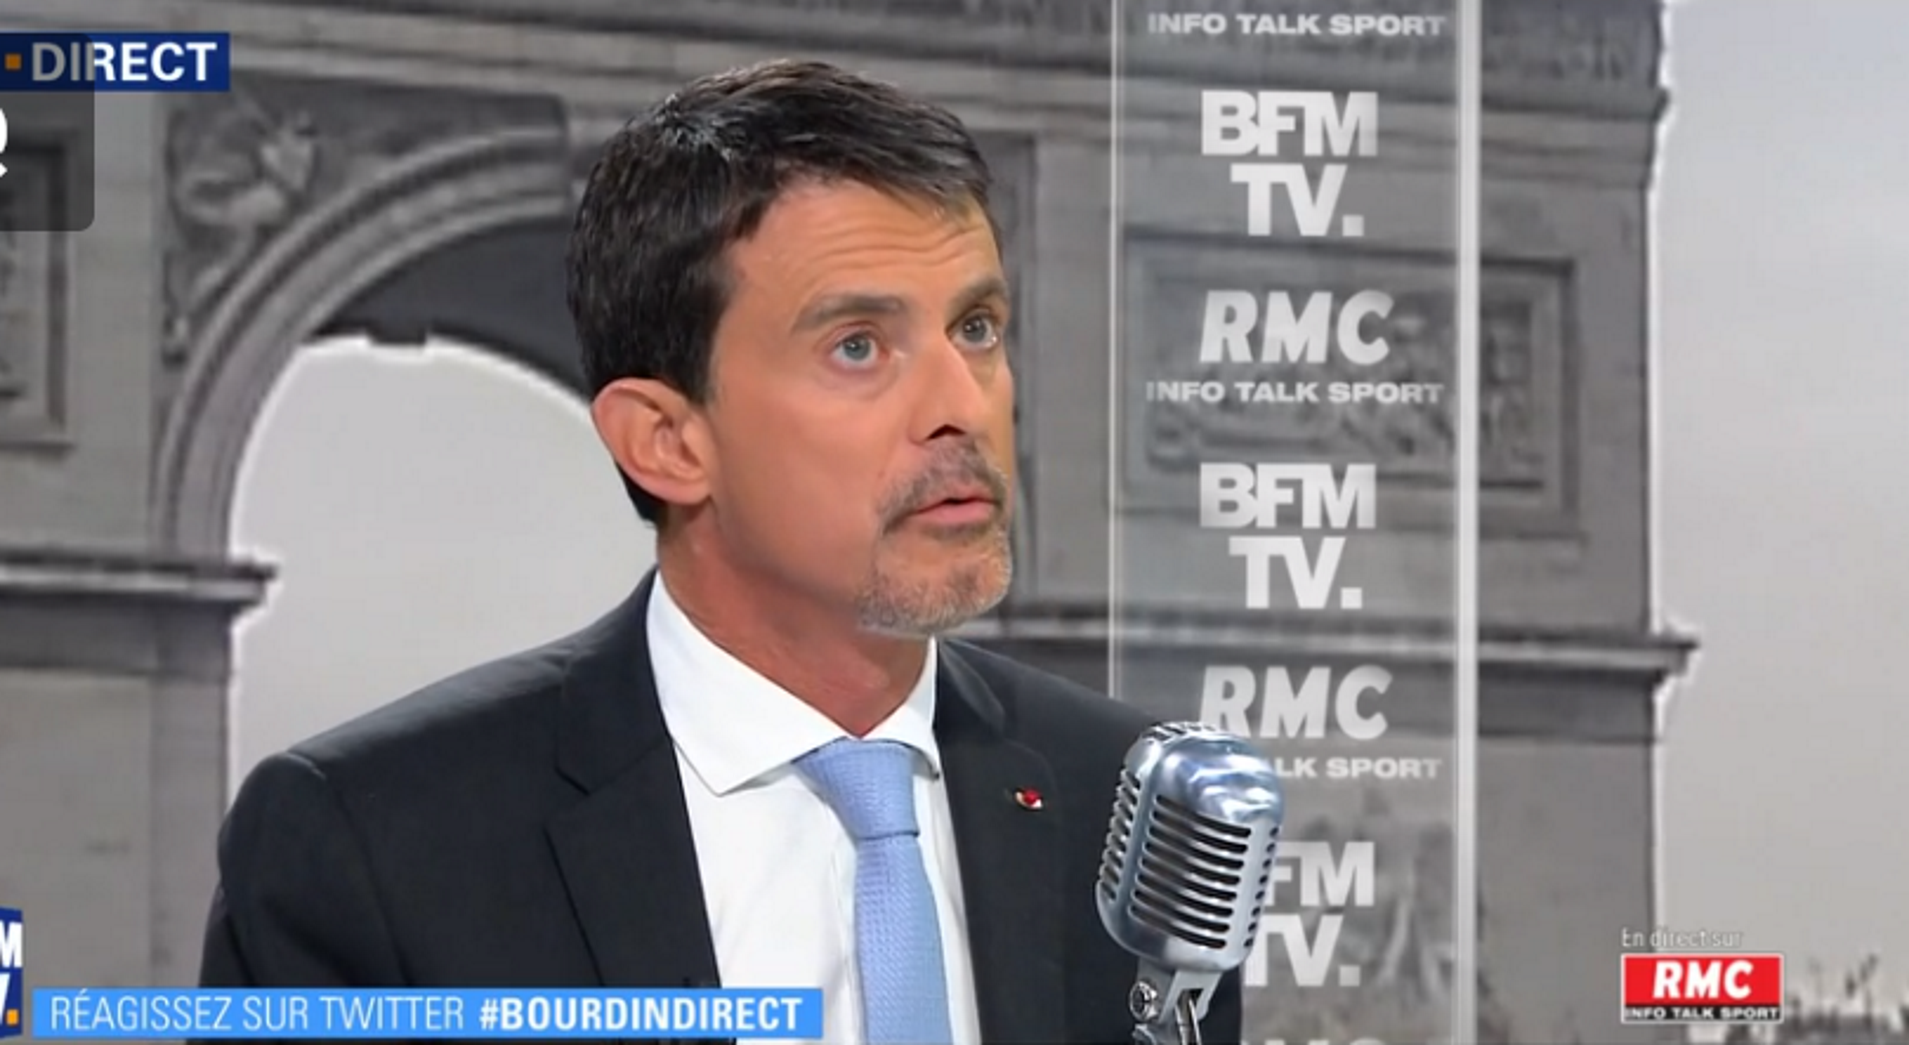 'Le Monde' muestra la irritación de los socialistas franceses con Manuel Valls